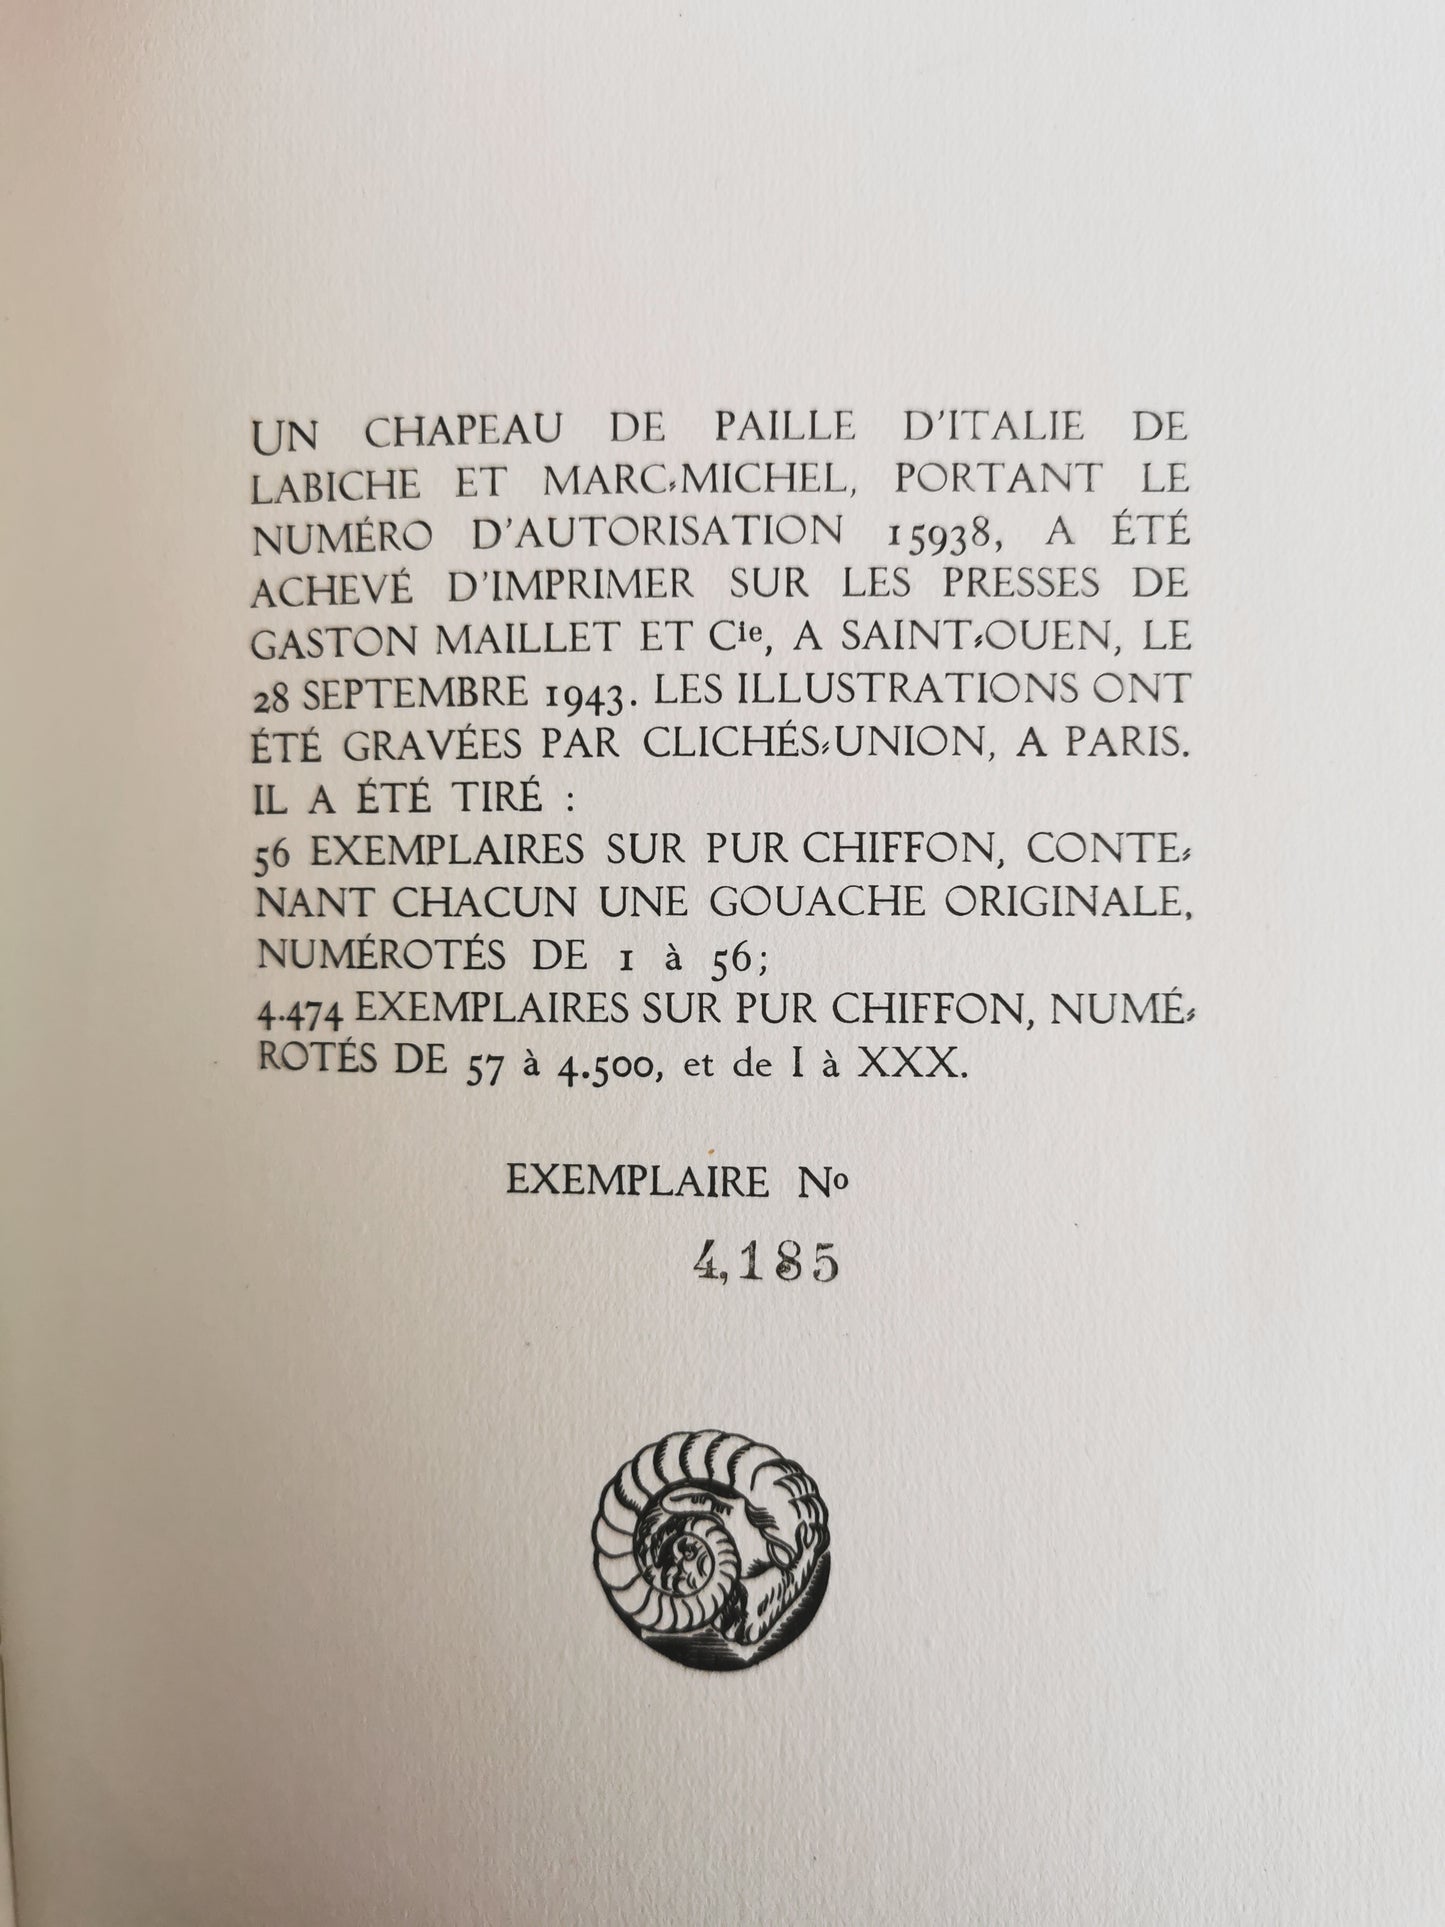 Un chapeau de paille d'Italie, E. Labiche, Marc-Michel, ill. R. Peynet, Editions du Bélier, 1943.